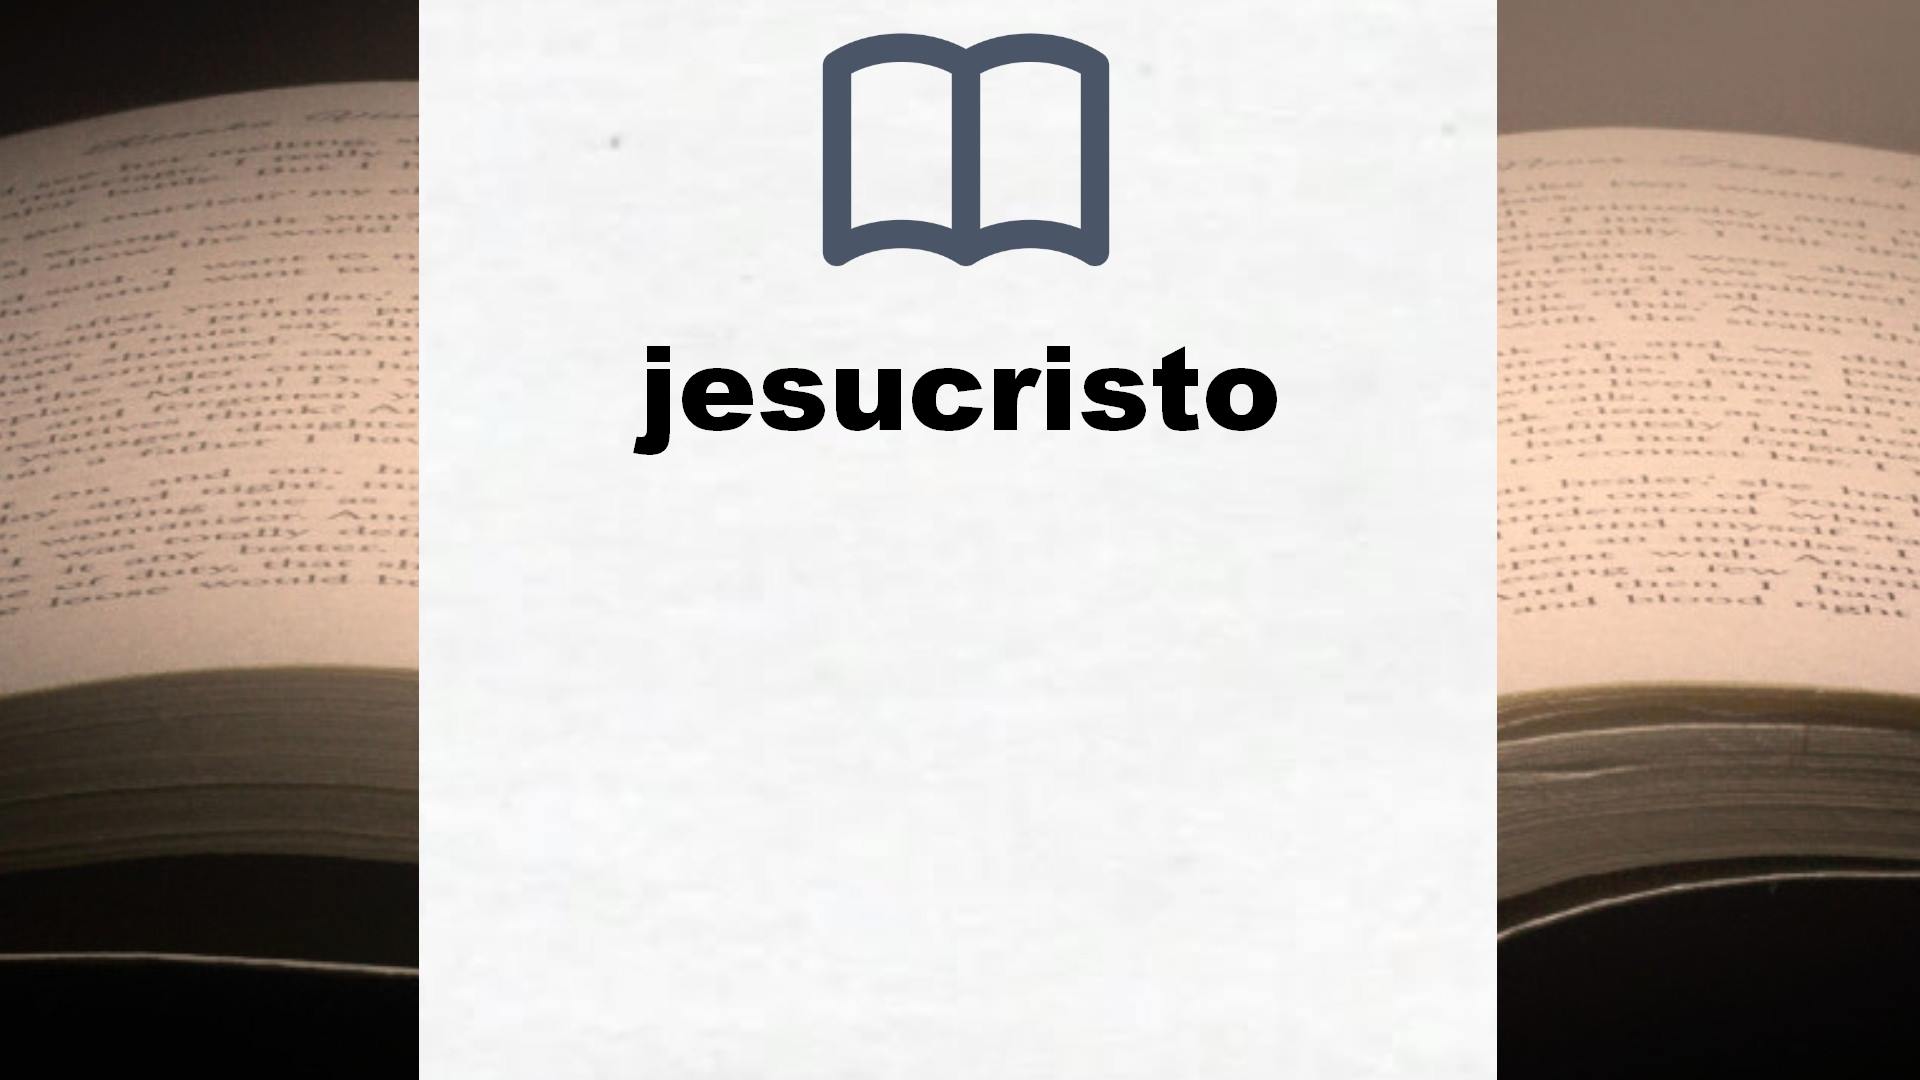 Libros sobre jesucristo